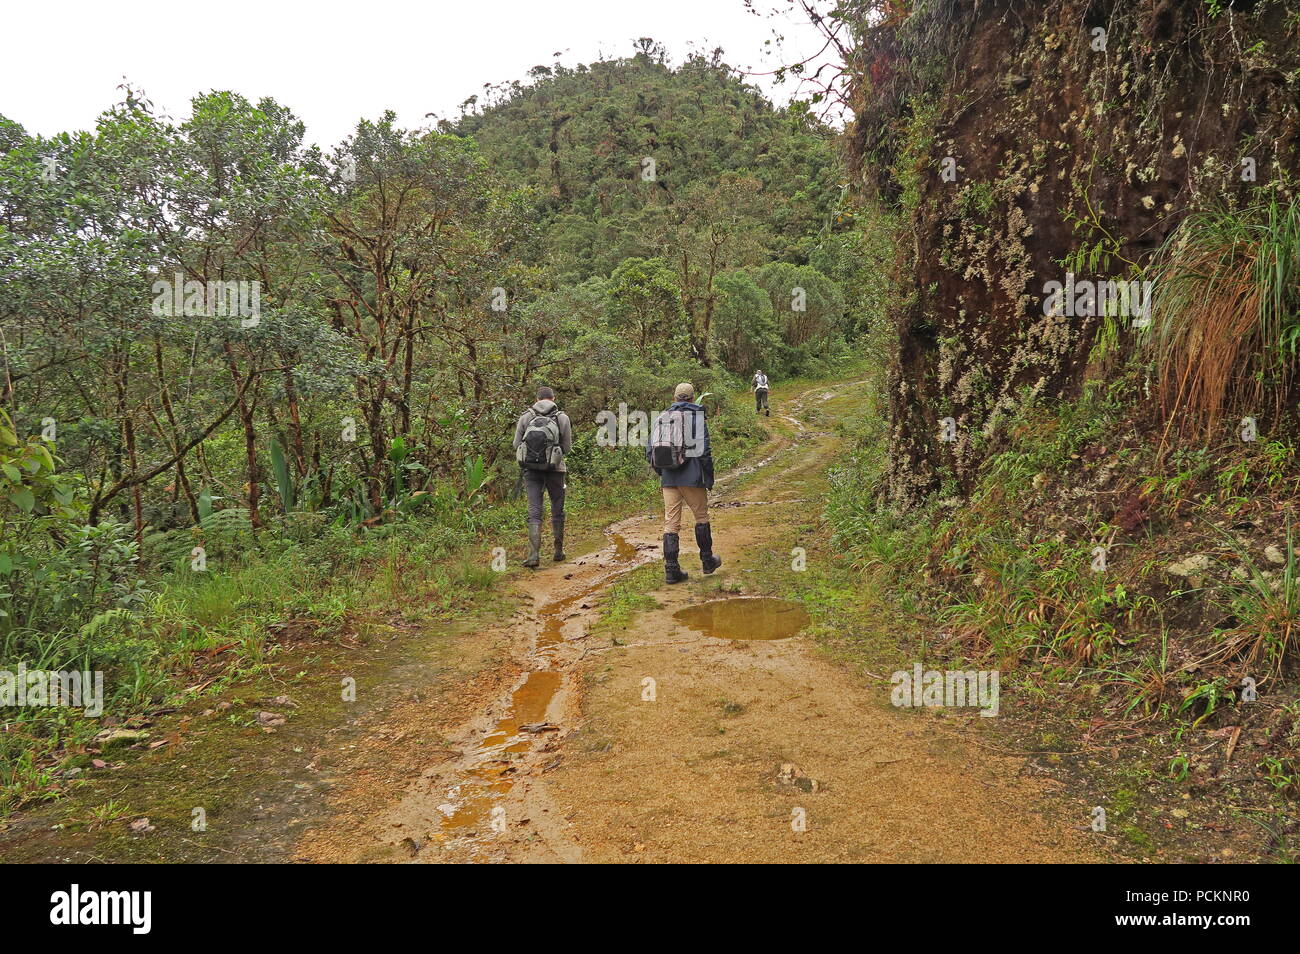 Les ornithologues, marcher le long de la voie de montagne boueux dans la réserve de Yanacocha, pluie Février Equateur Banque D'Images